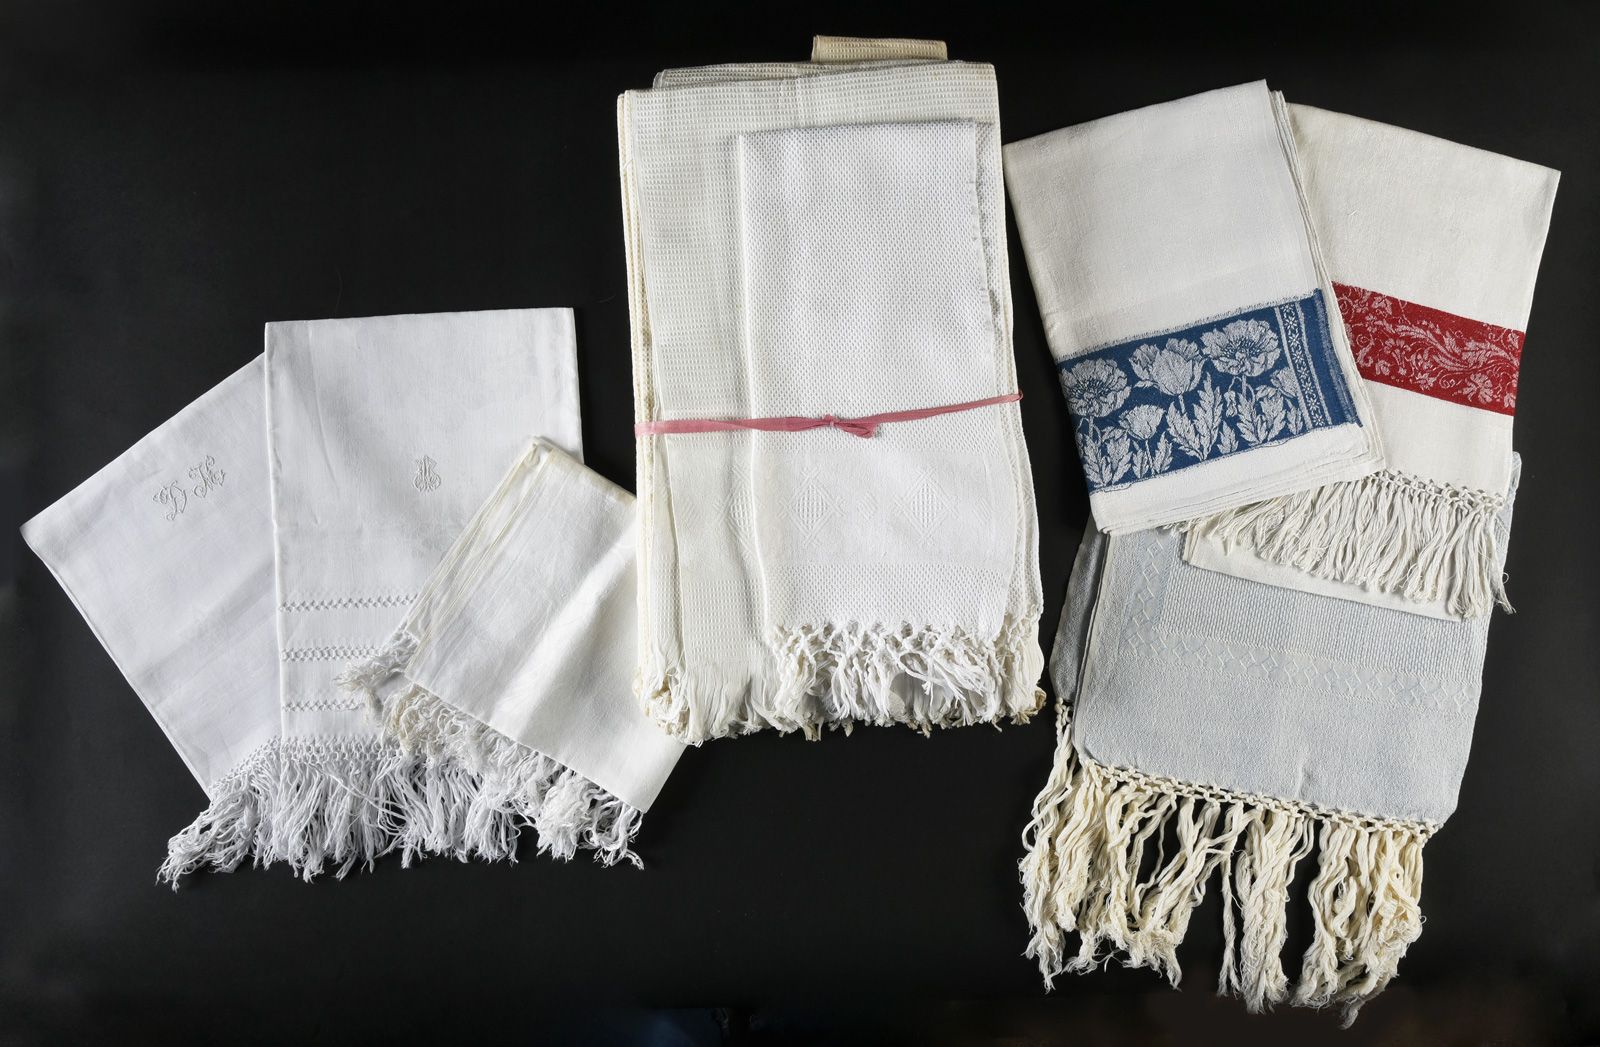 Null 十四条毛巾，19世纪末和20世纪初。
其中五条是蜂窝状和两端的大马士革带，三条是大马士革，两条有精细的刺绣人物，三条是双色的，还有三条是其他。